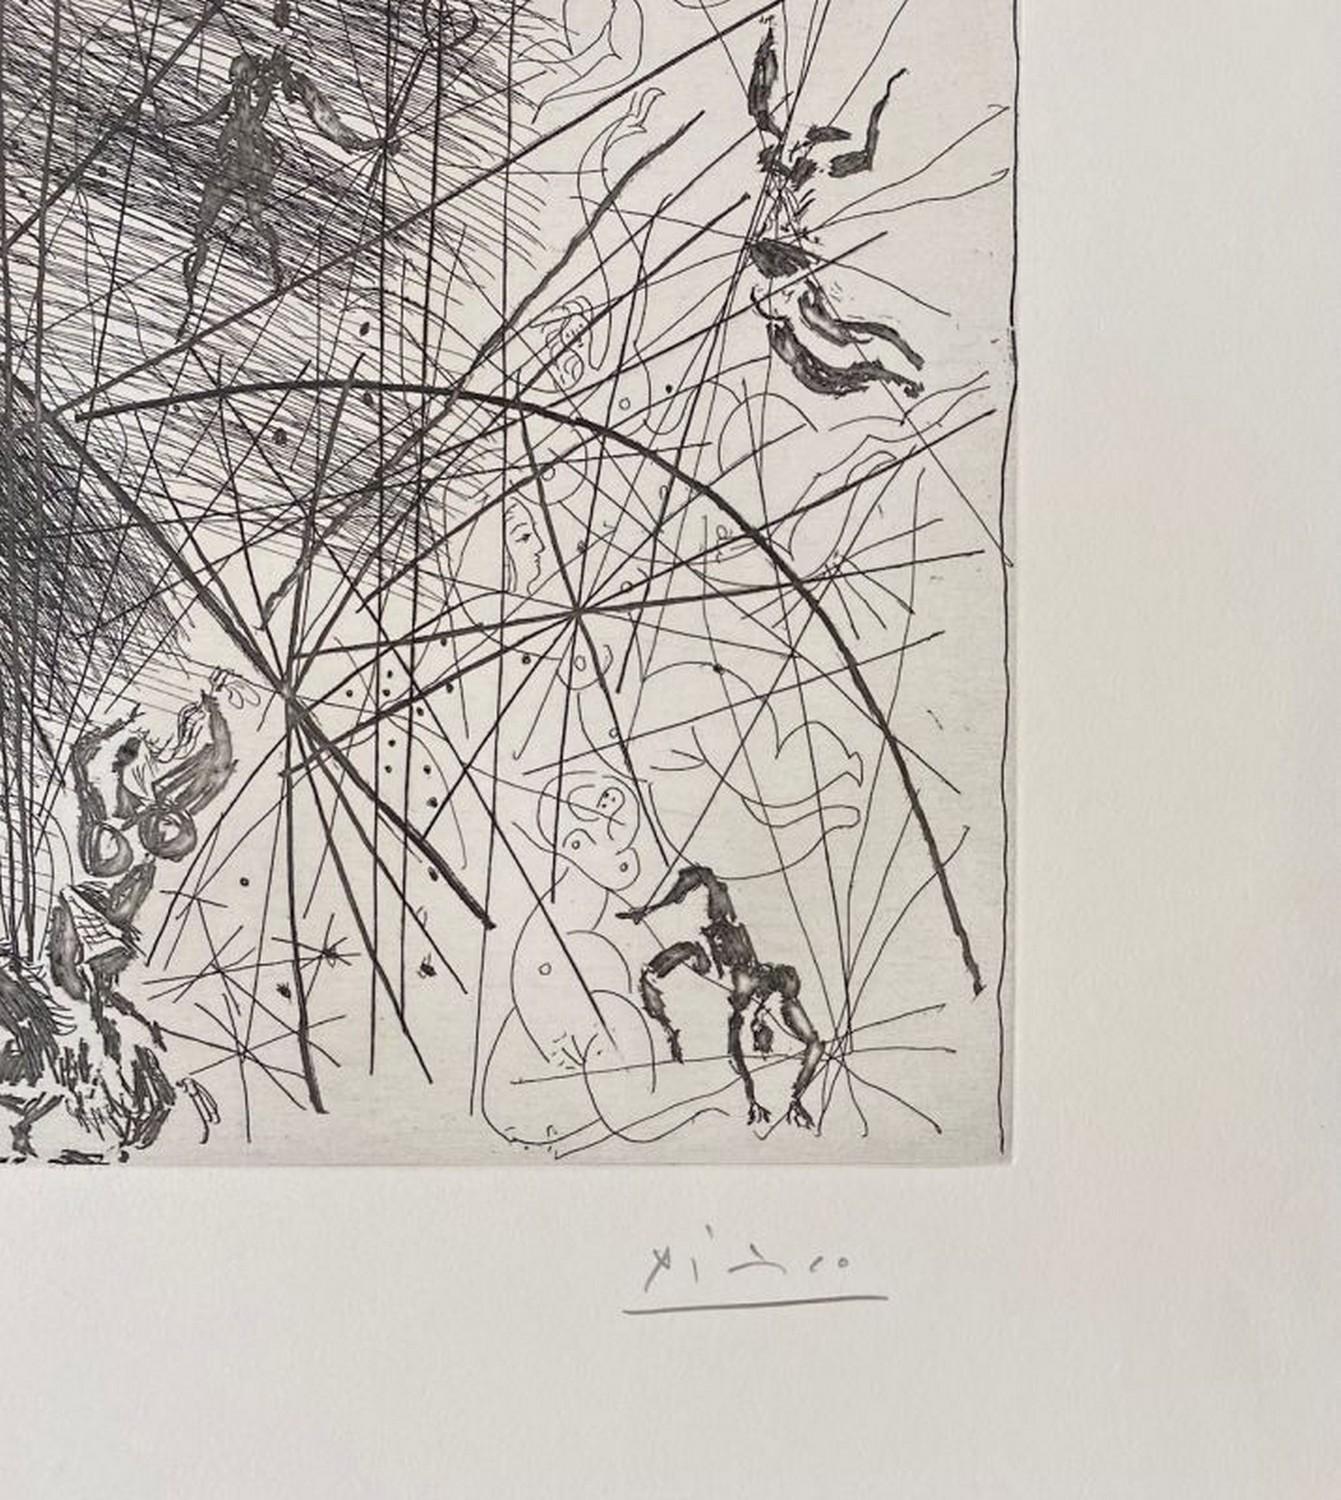 Vieux bouffon contemplant des acrobates I  - Print by Pablo Picasso